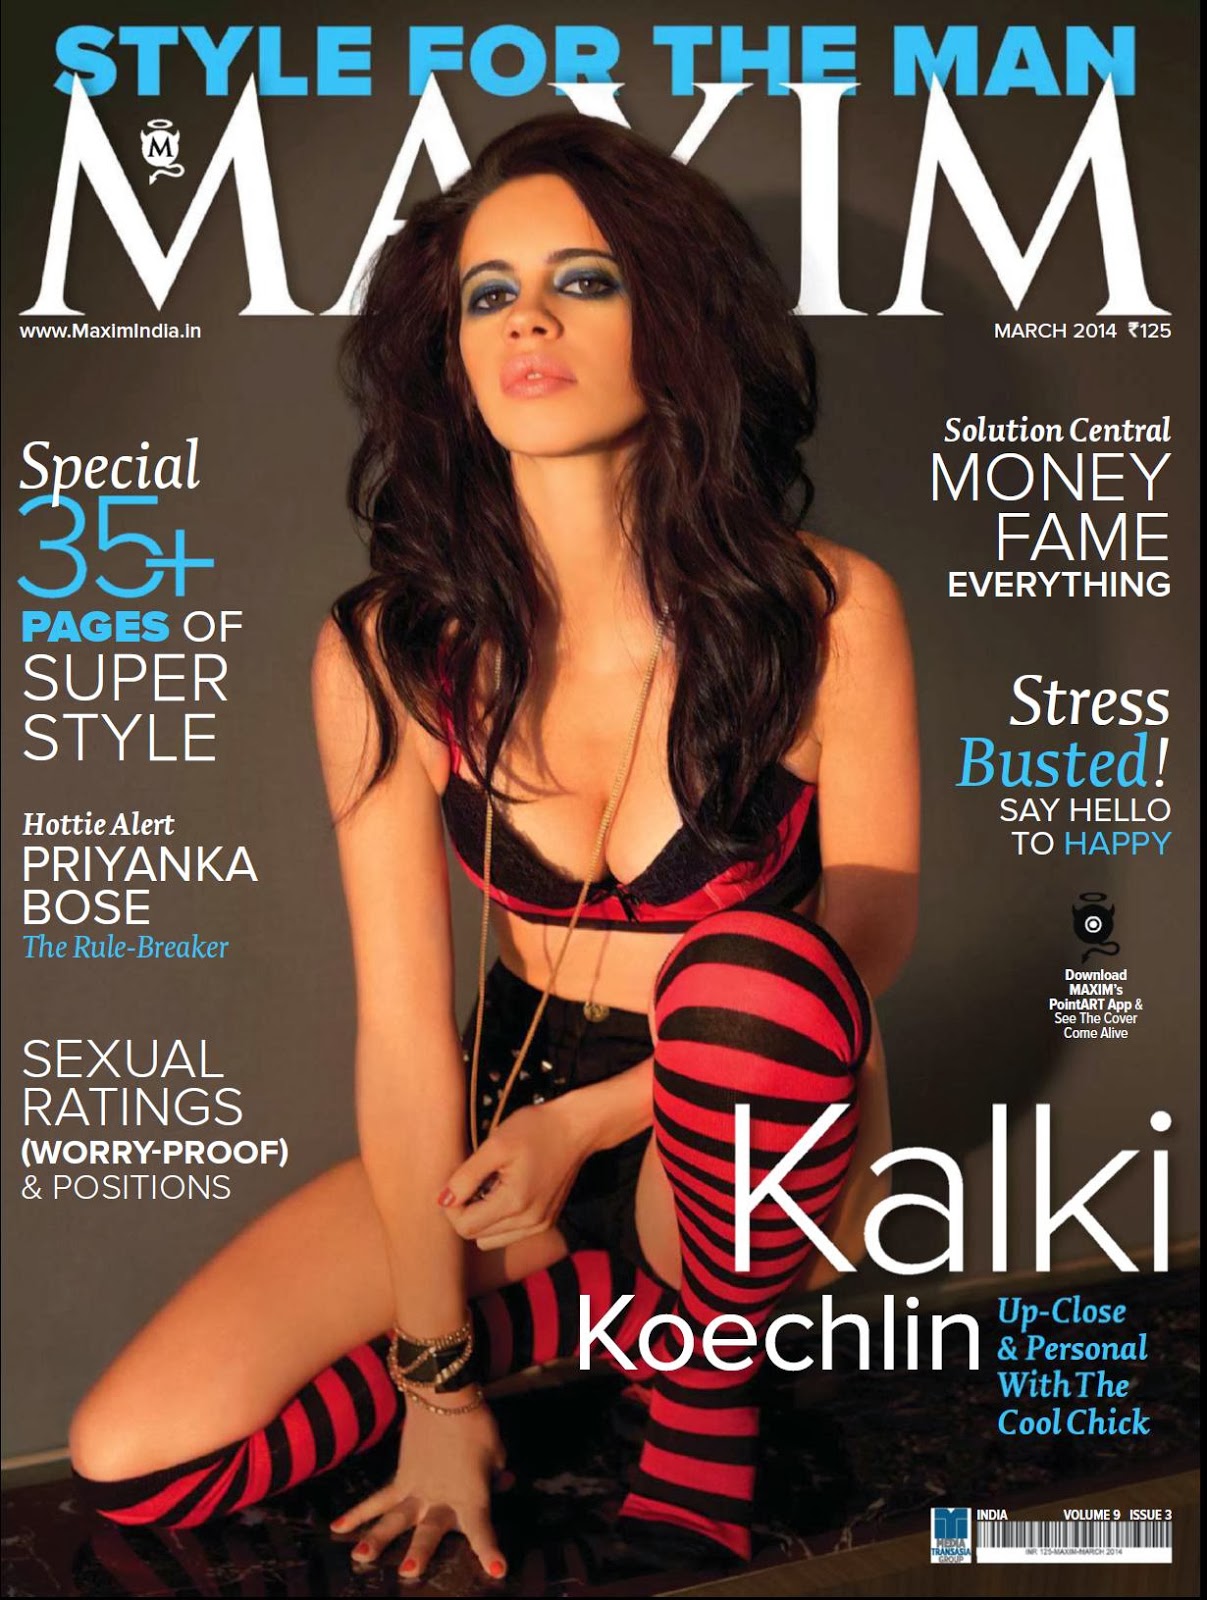 http://2.bp.blogspot.com/-LKyntv8zSpk/UxjIq-5UppI/AAAAAAAAmIQ/yJMkQ4pYMvI/s1600/Kalki+Koechlin+Maxim+Magazine+India+March+2014+HQ+Pictures+(1).JPG